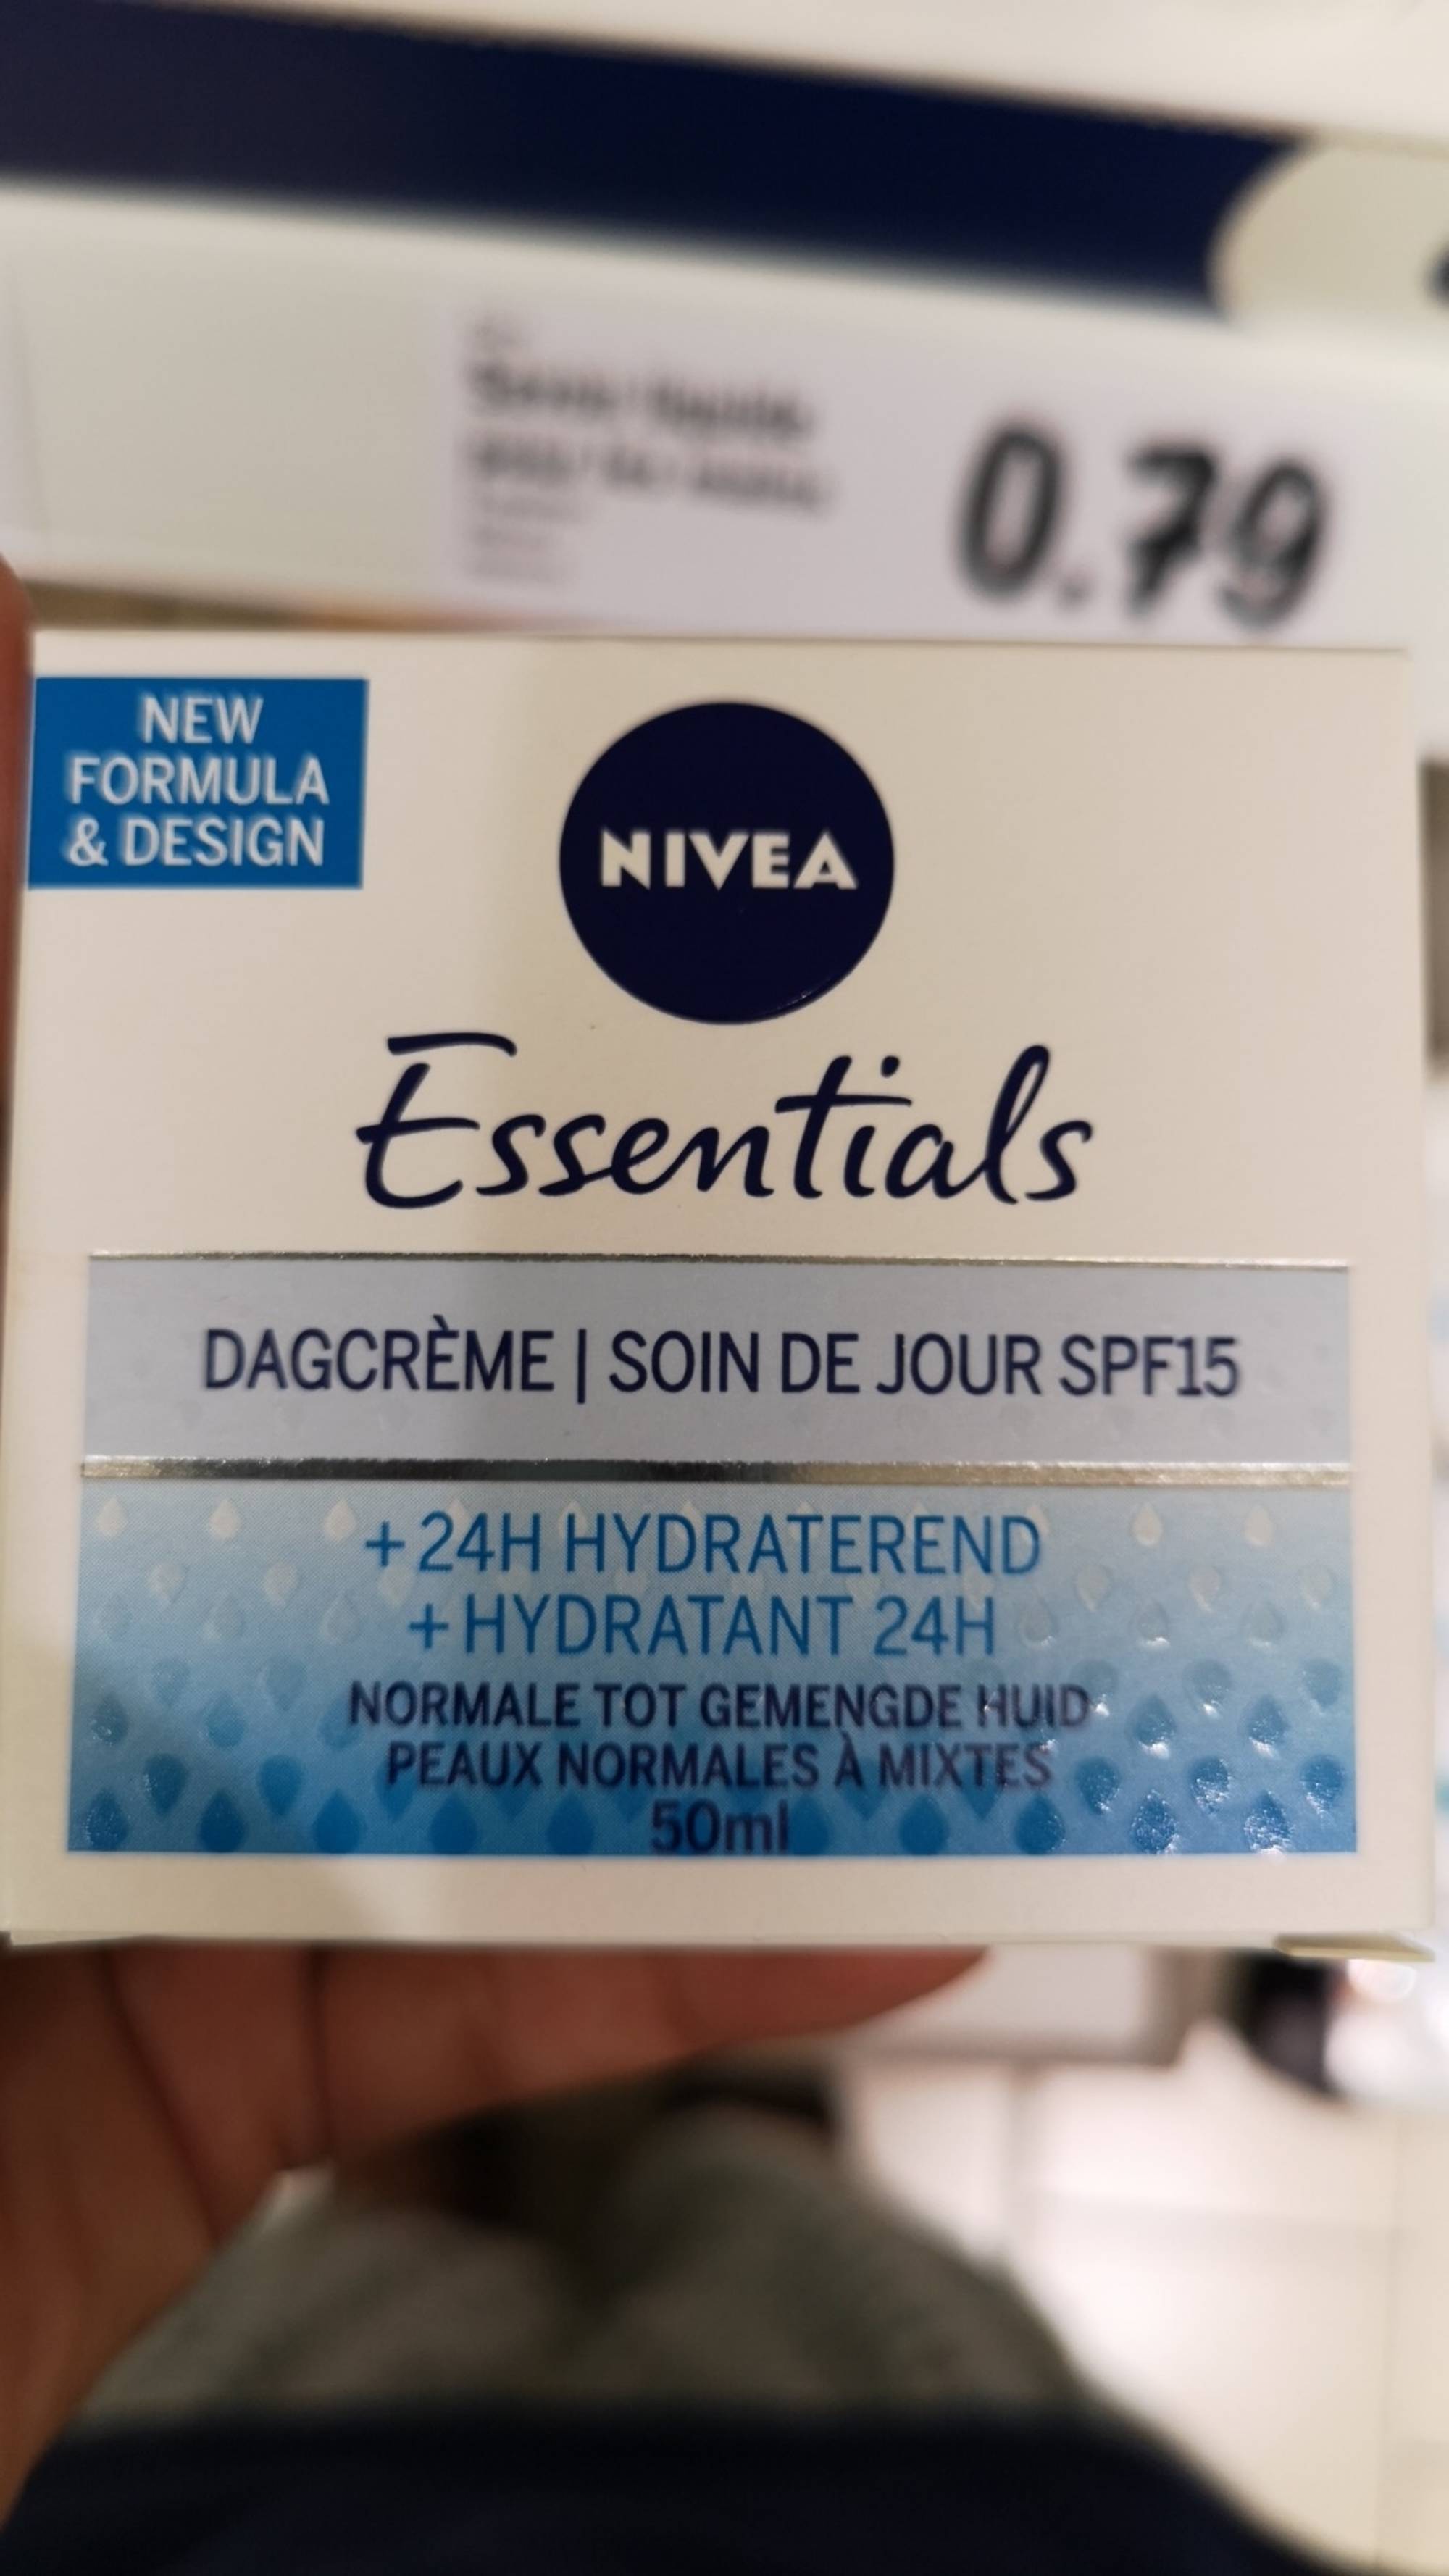 NIVEA - Essentials - Soin de jour SPF 15 + Hydratant 24h